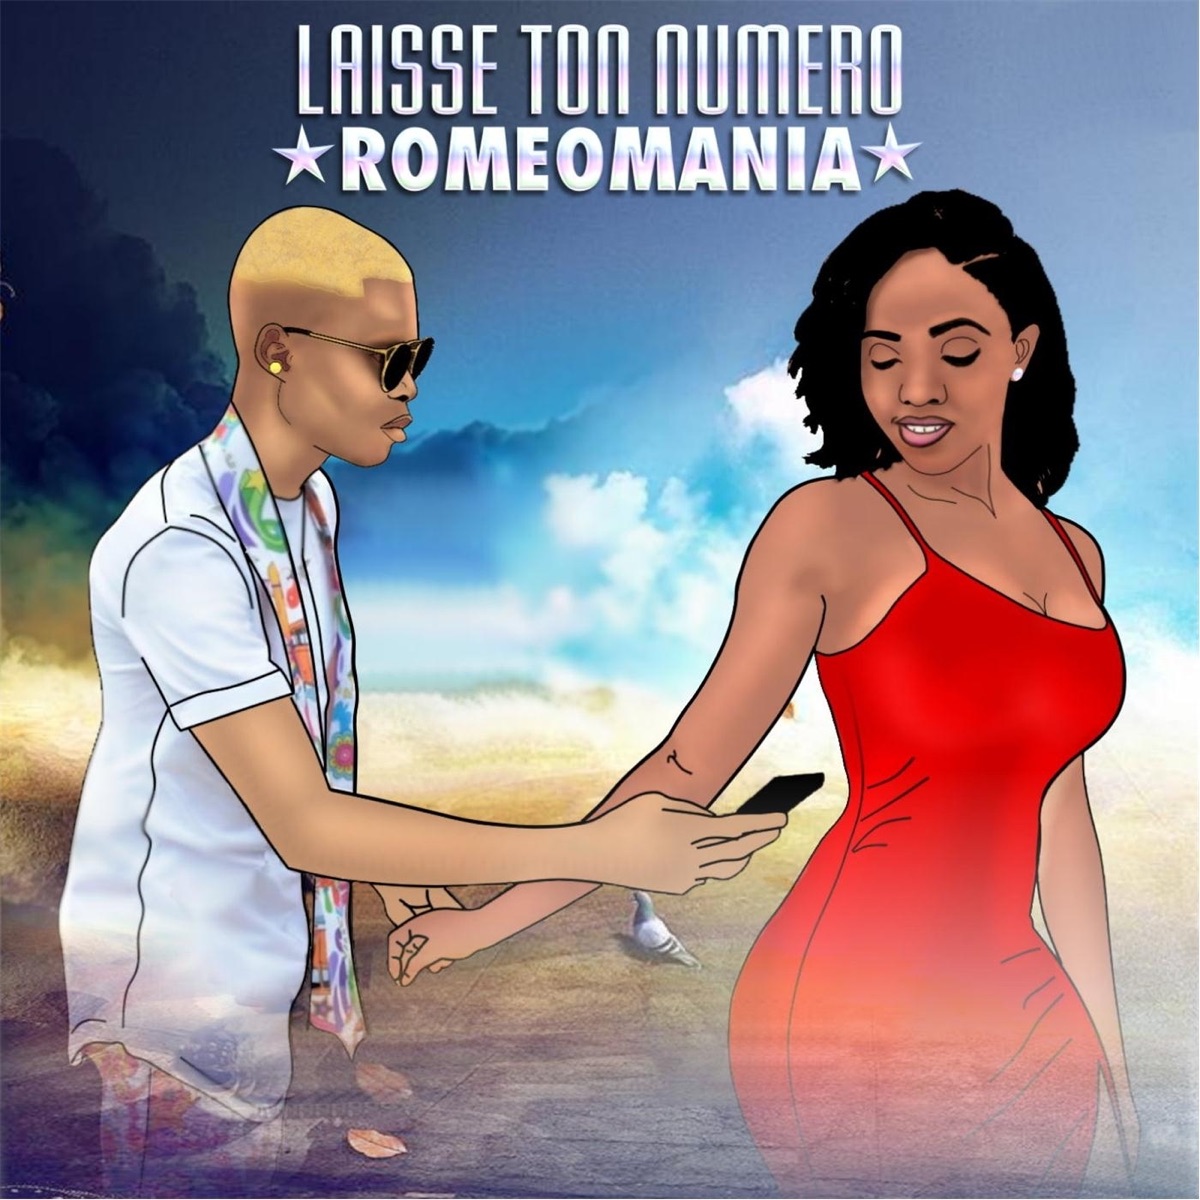 LAISSE TON NUMERO - EP by Romeomania on Apple Music